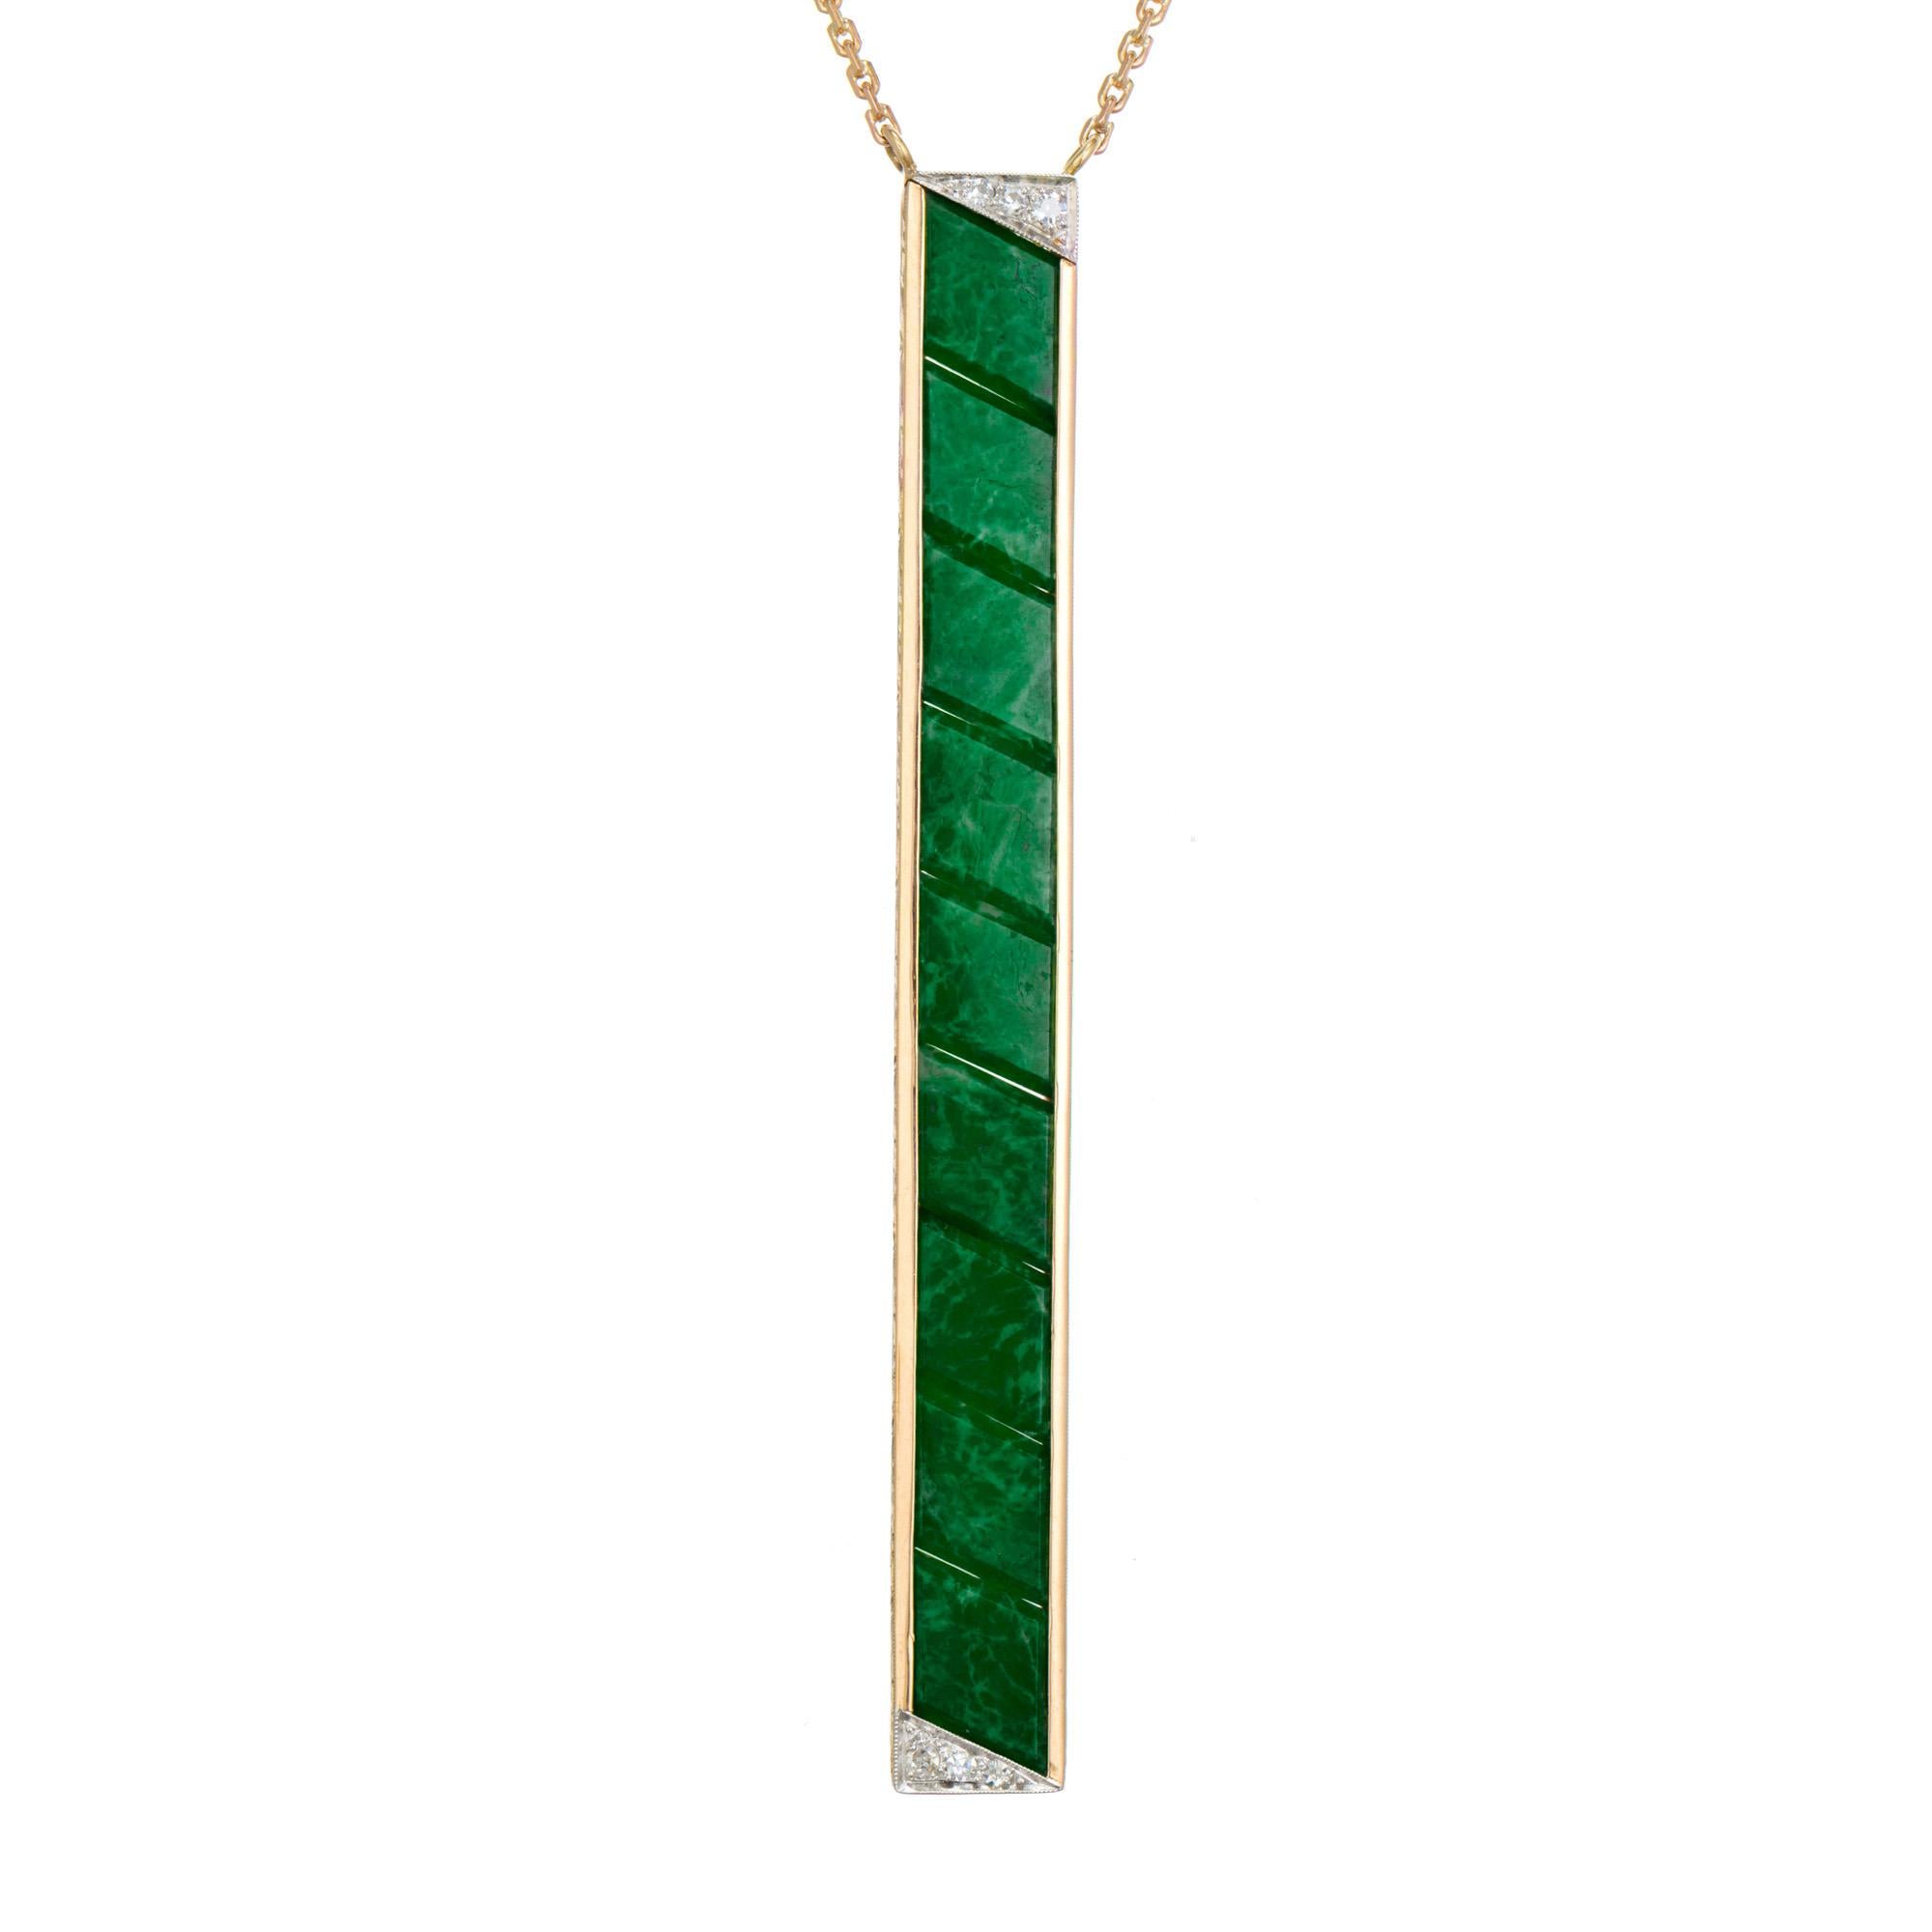 Art Deco Jadeit Jade Anhänger Halskette. GIA-zertifizierter, grüner, natürlicher Jadeit mit Rautentafel-Schliff und langem Stabanhänger aus 14-karätigem Gelbgold mit Platinecken, akzentuiert mit 3 Diamanten im Einzelschliff in jeder Ecke. Vom GIA